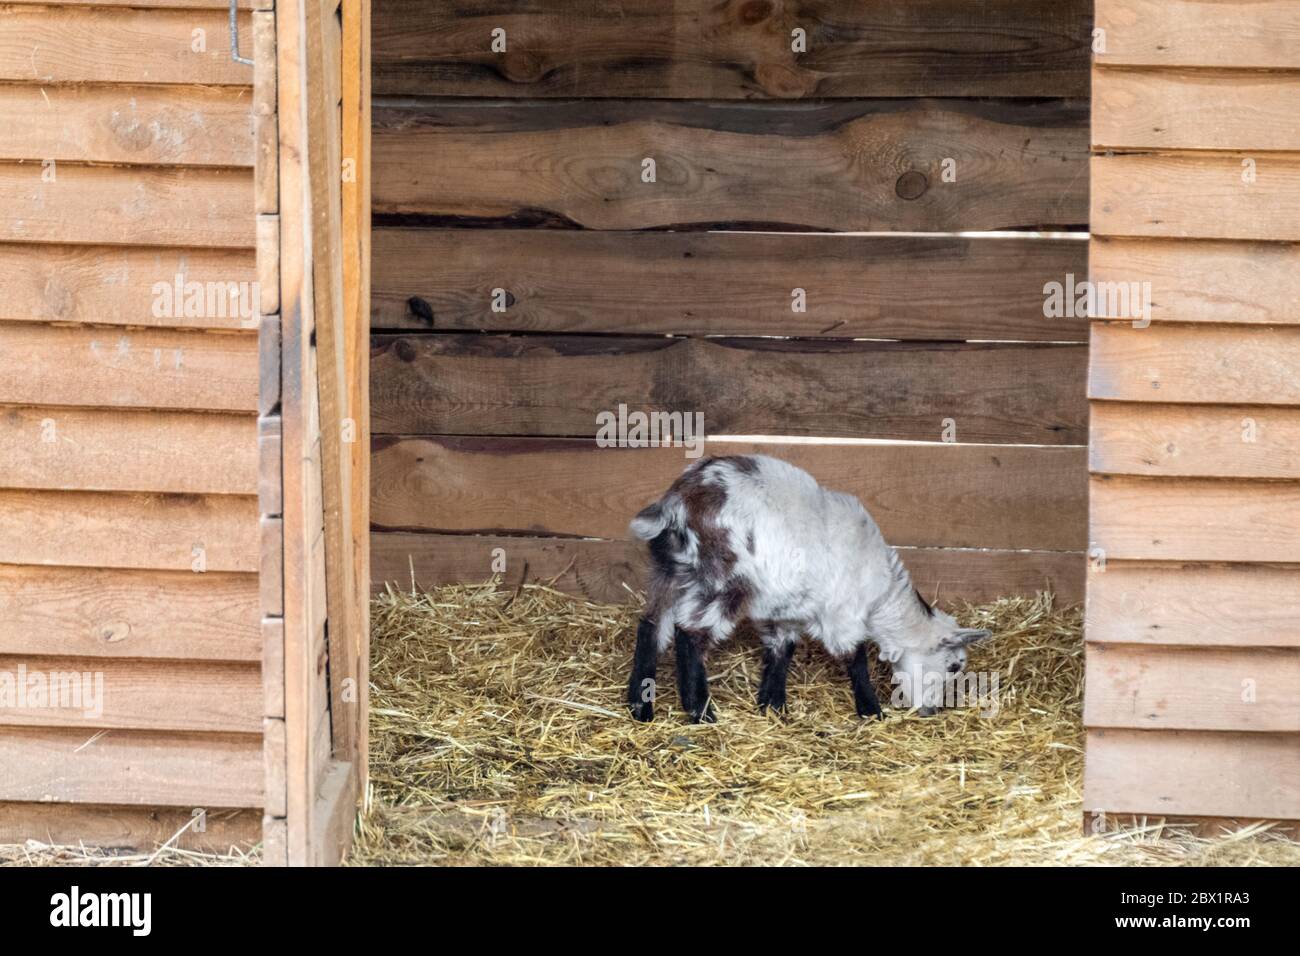 Ein niedliches Baby weiß mit schwarzen Punkten Ziege stehend essen auf  Stroh Bettwäsche in einem Tier Bauernhof Stift Stockfotografie - Alamy